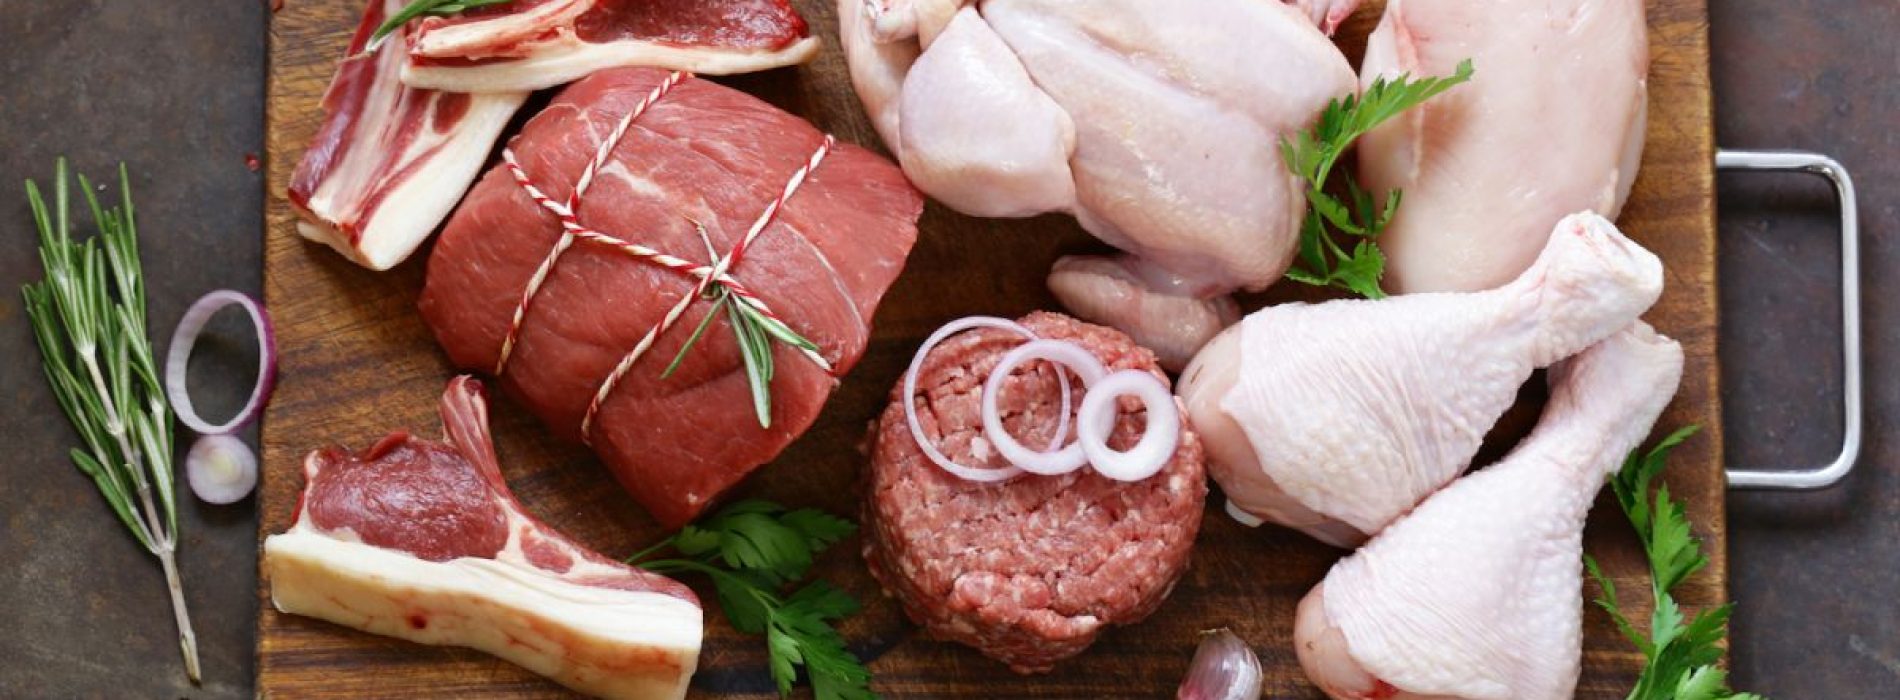 Baanbrekende nieuwe studie vindt op vlees gebaseerde antioxidanten in rundvlees, kip en varkensvlees: imidazooldipeptide-oxidatiederivaten